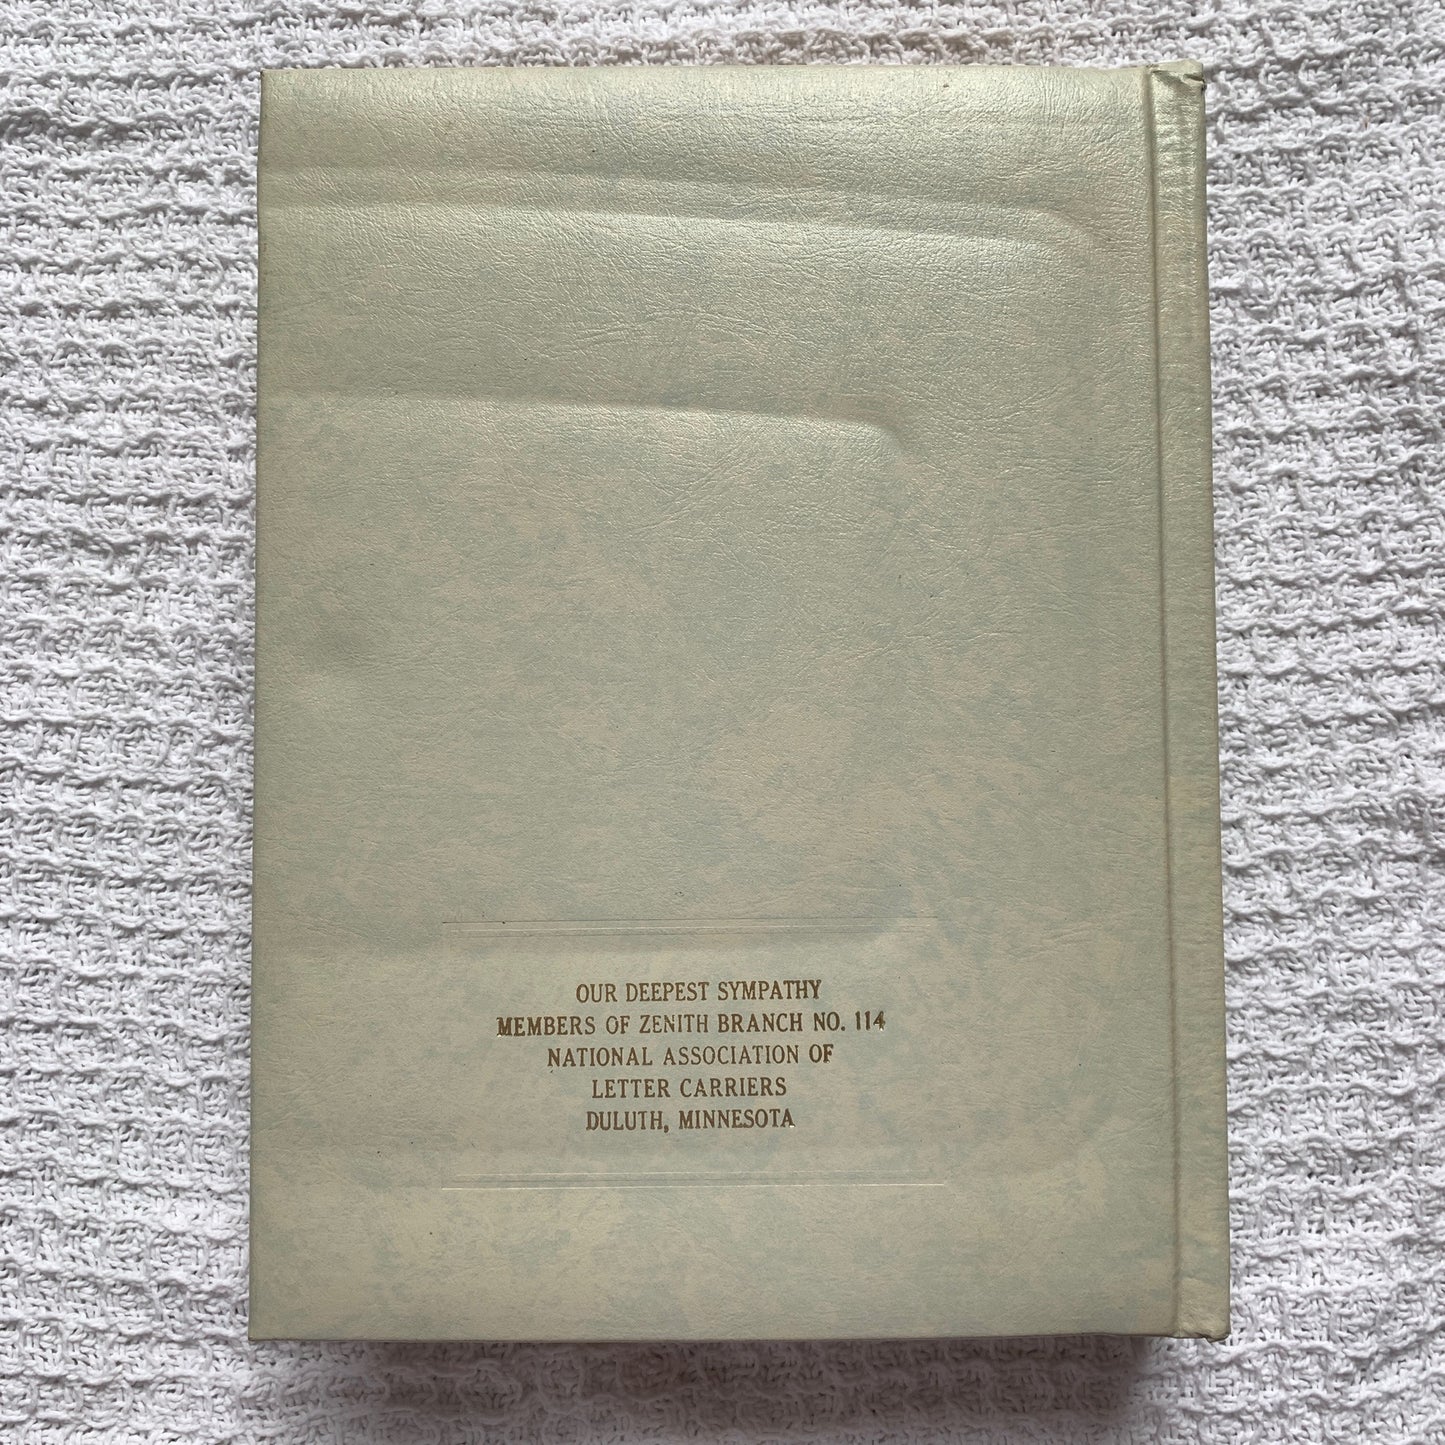 1971 Holy Bible Keepsake Family Edition Large Hardcover